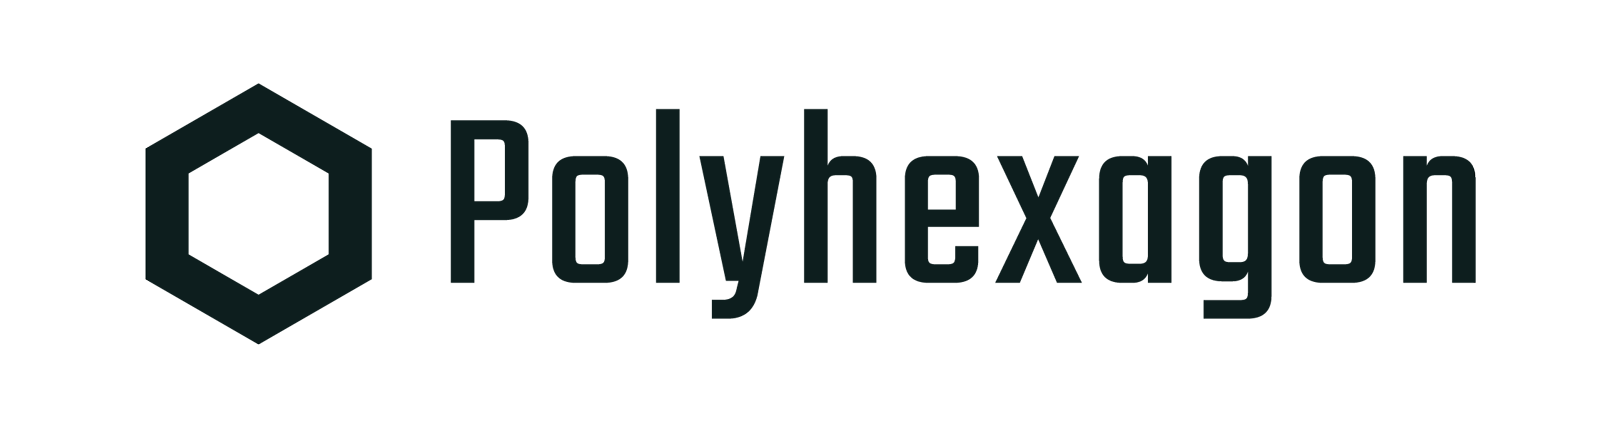 Polyhexagon